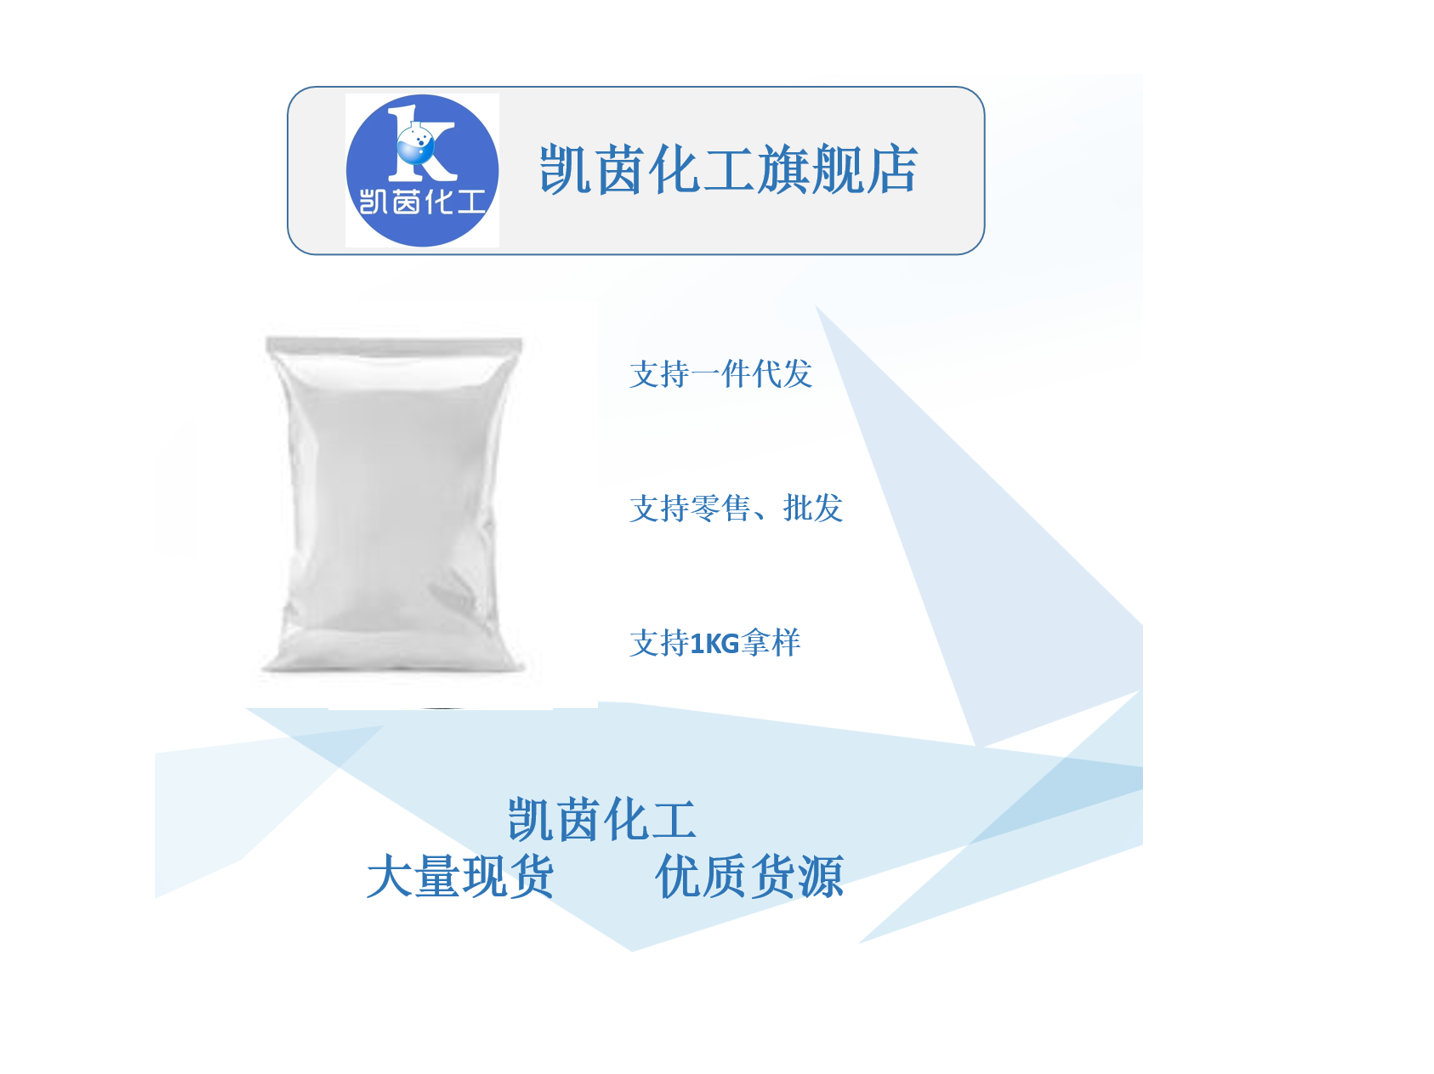 矽比科 BR-4 高岭土 高纯度 微细硅微粉 橡胶化合物专用添加剂